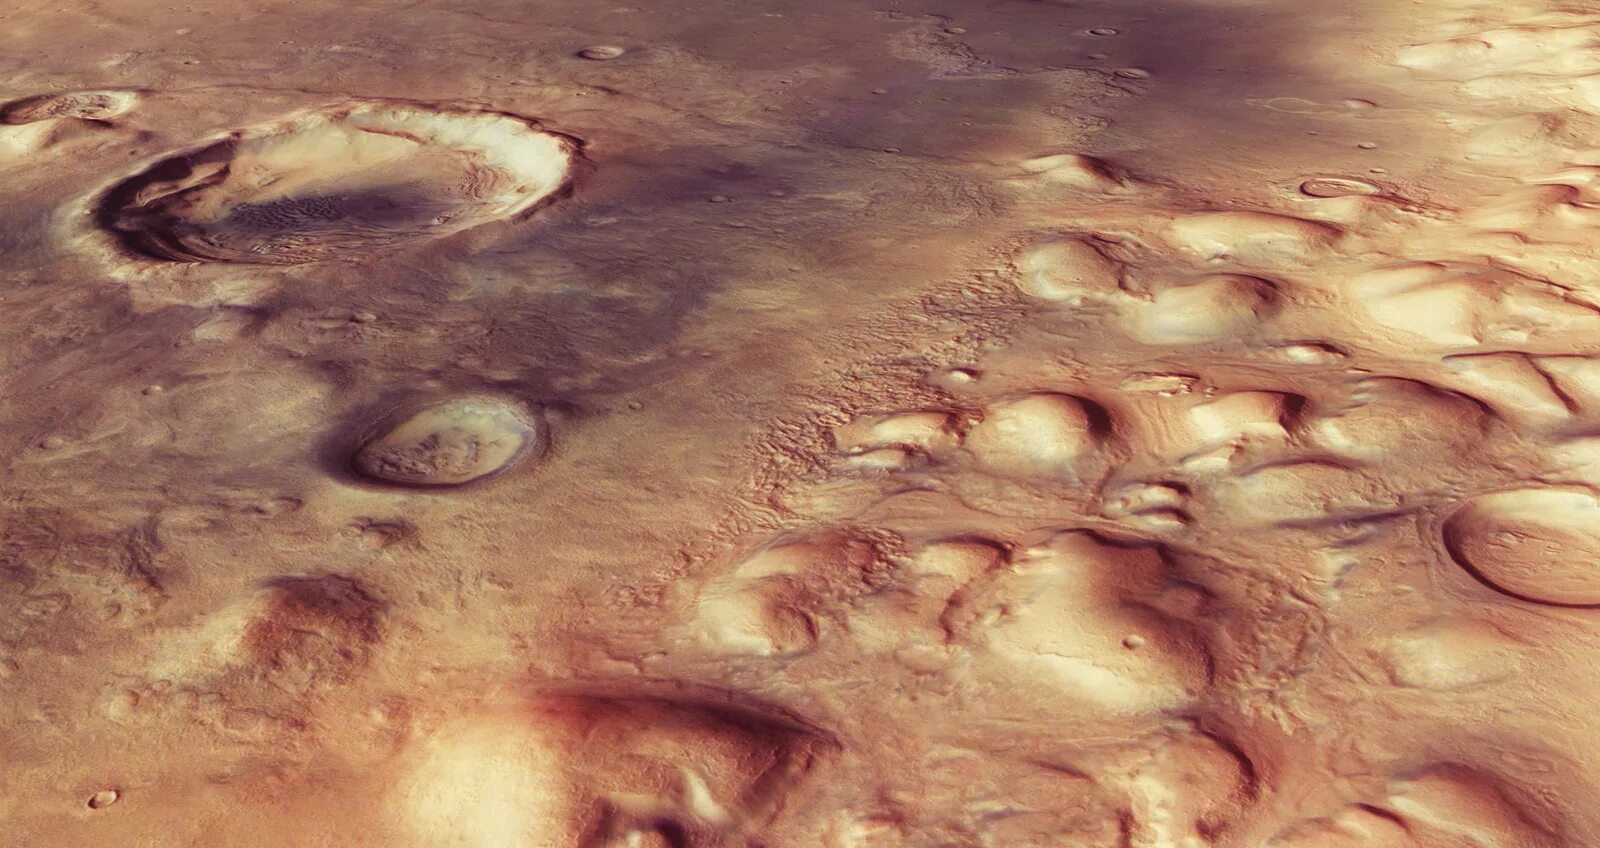 Снимки Марса со спутника. Спутники Марса. Спутники Марса фото. Моря на Марсе. Почему планета марс